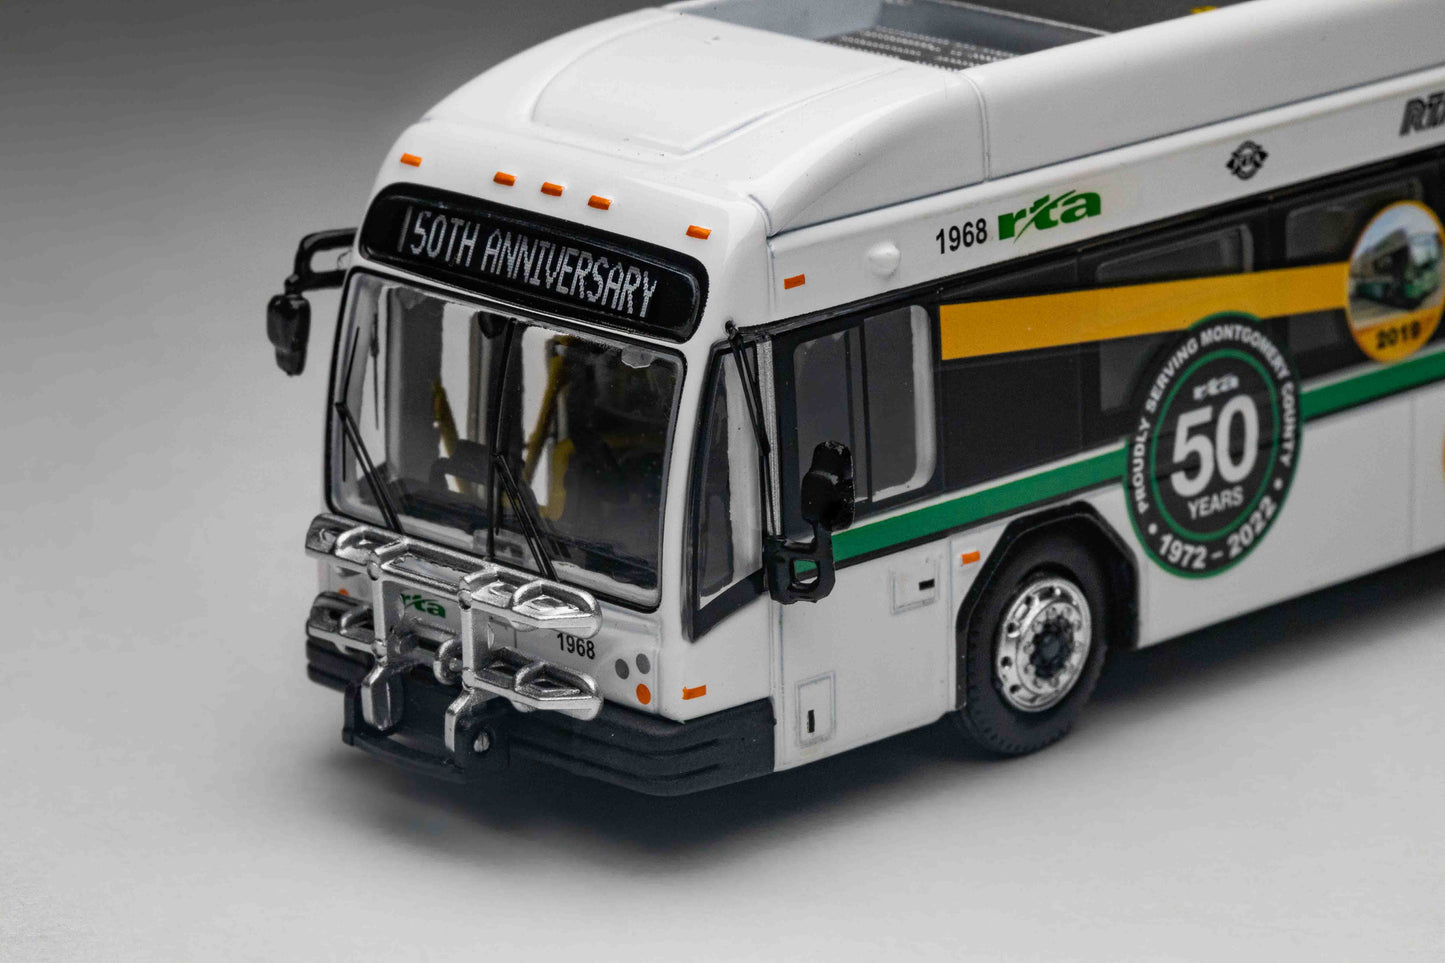 Greater Dayton RTA NexGen Trolley Bus 50th Anniversary